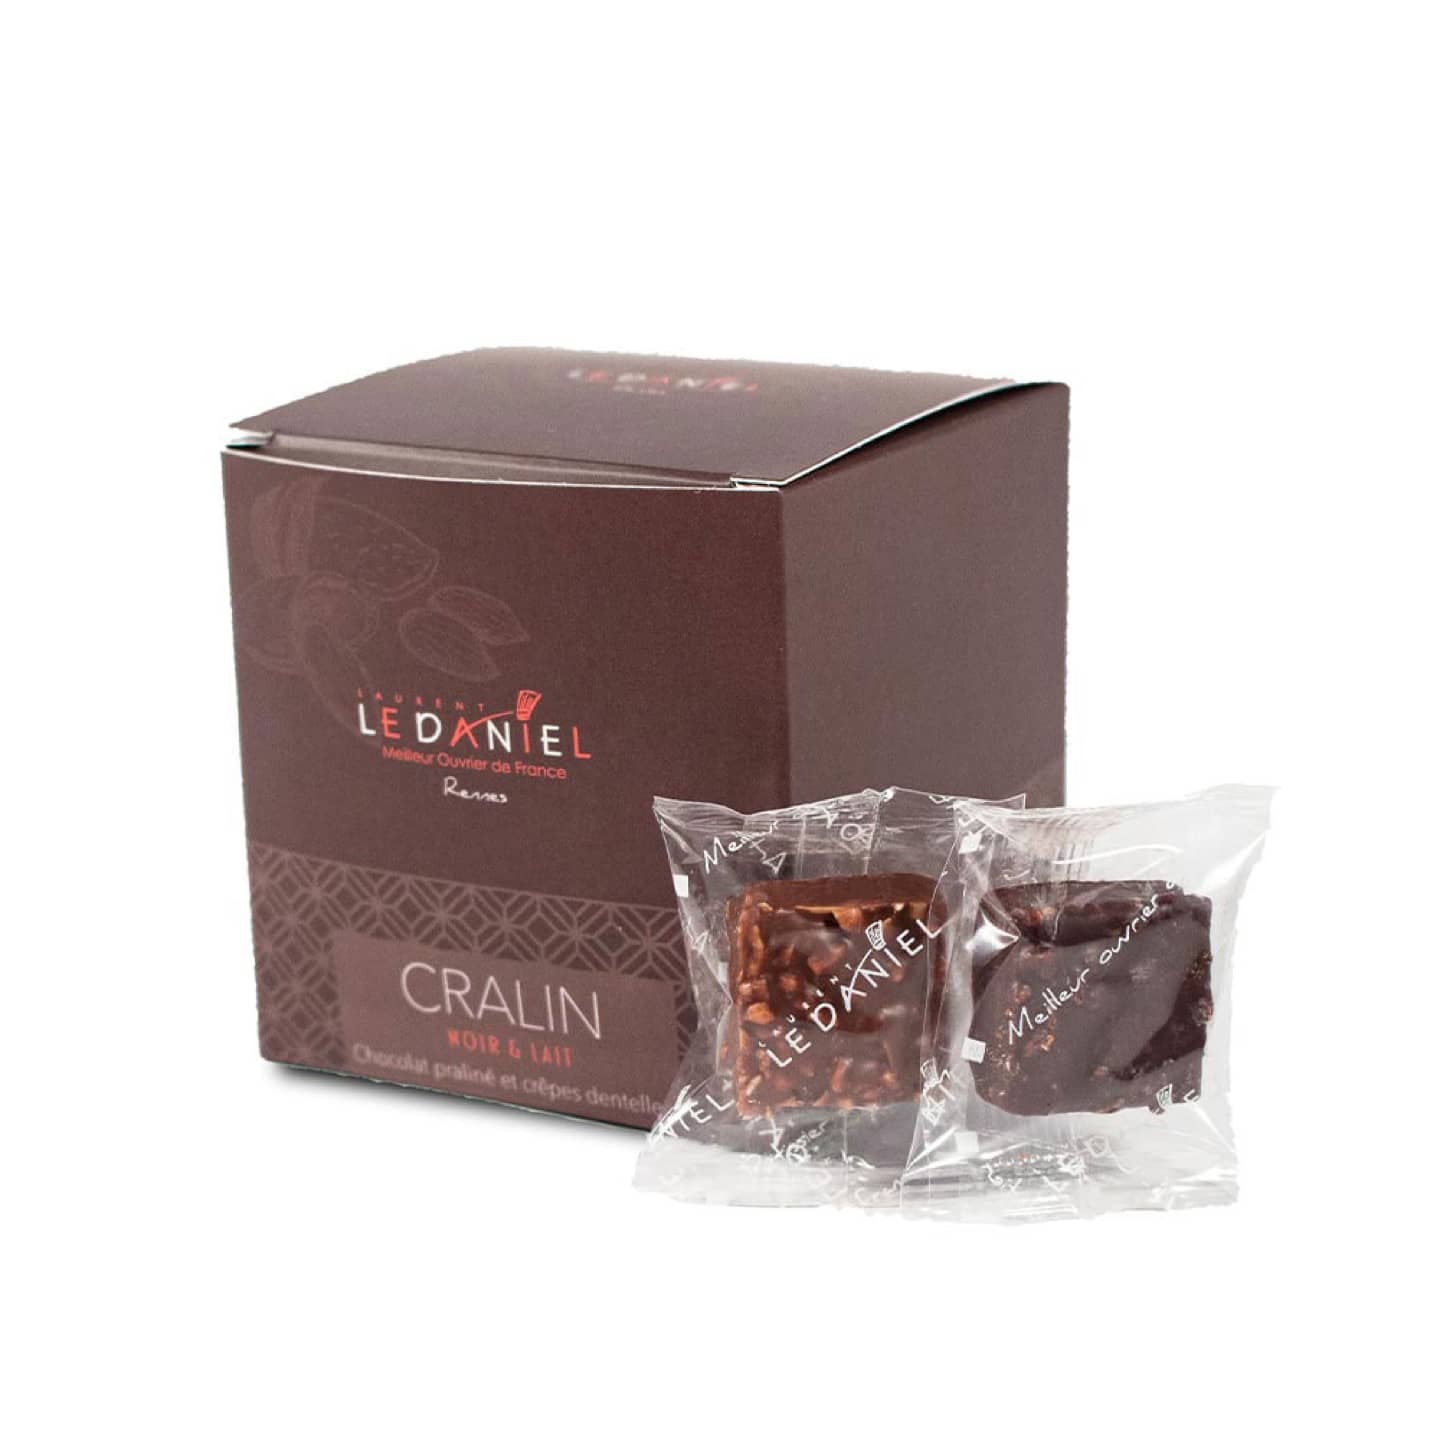 Chocolat Noir et Lait Crêpes Pralinés 150g Cralin